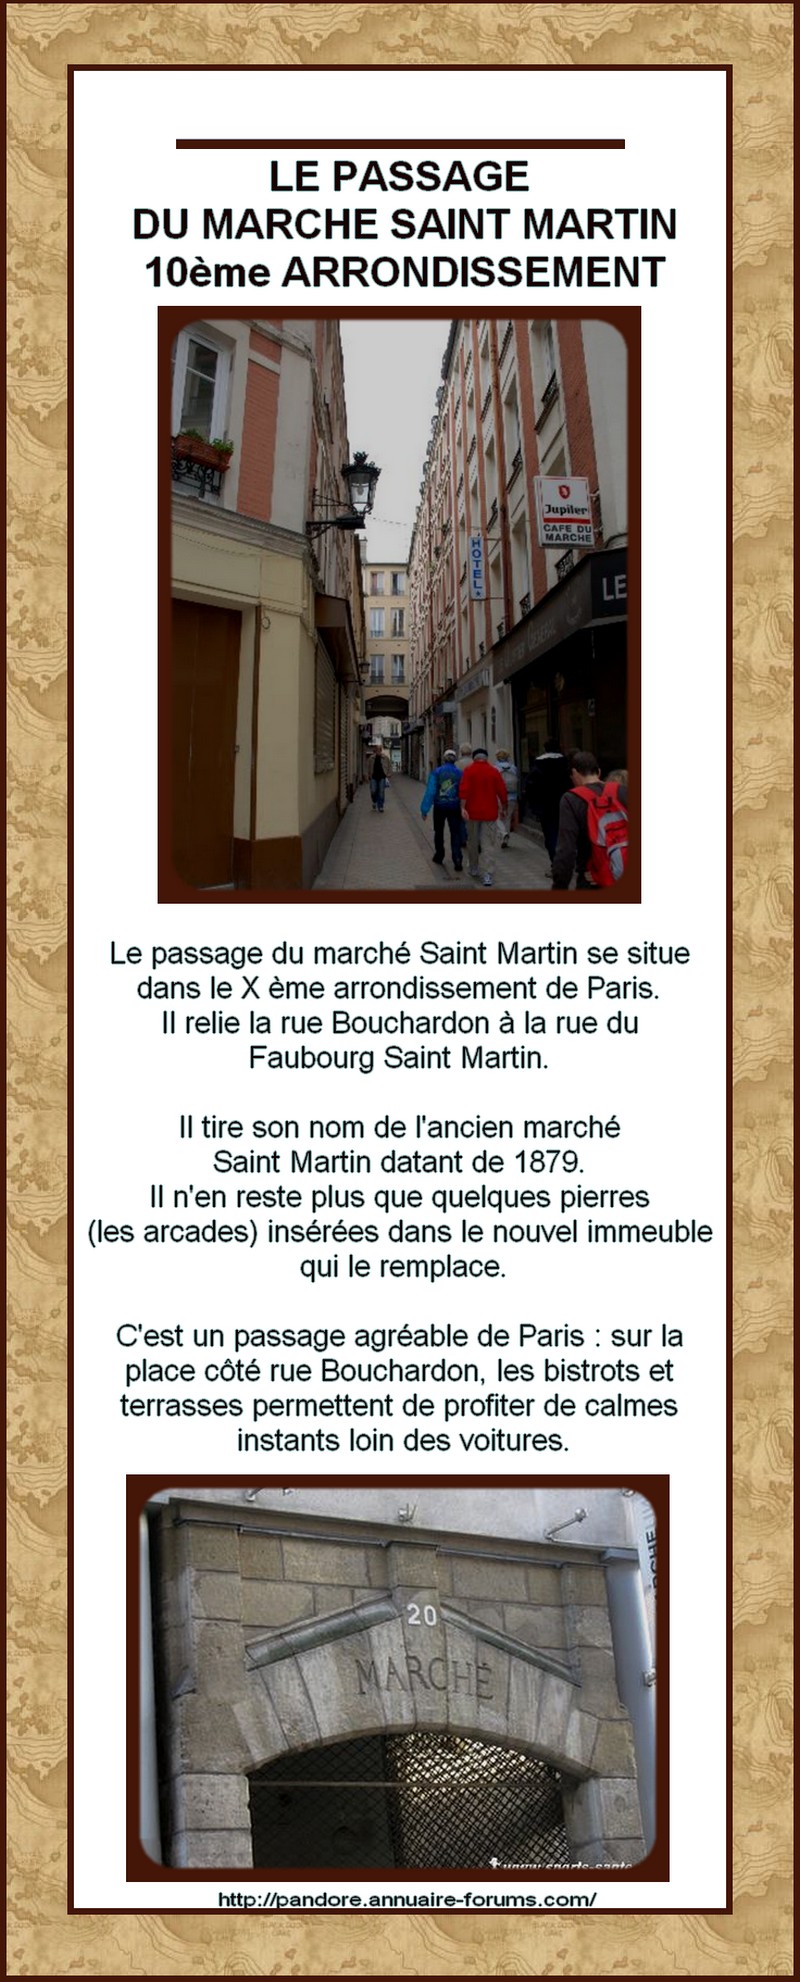 FRANCE - PARIS - PASSAGE INSOLITE - PASSAGE DU MARCHE SAINT MARTIN 11080411465188888547748